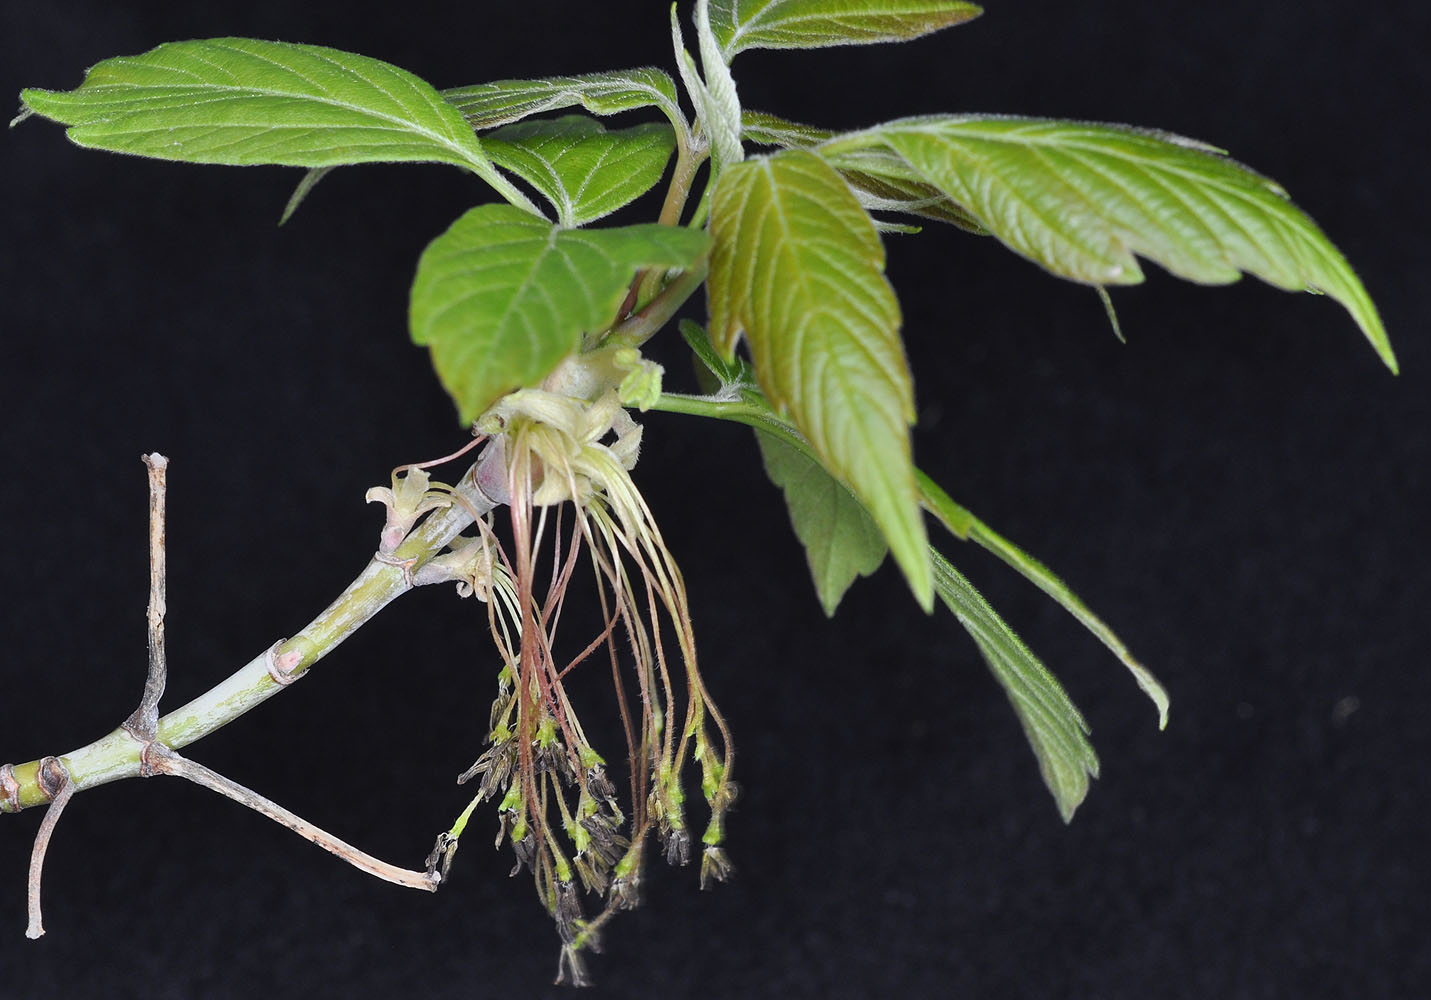 Flora of Eastern Washington Image: Acer negundo